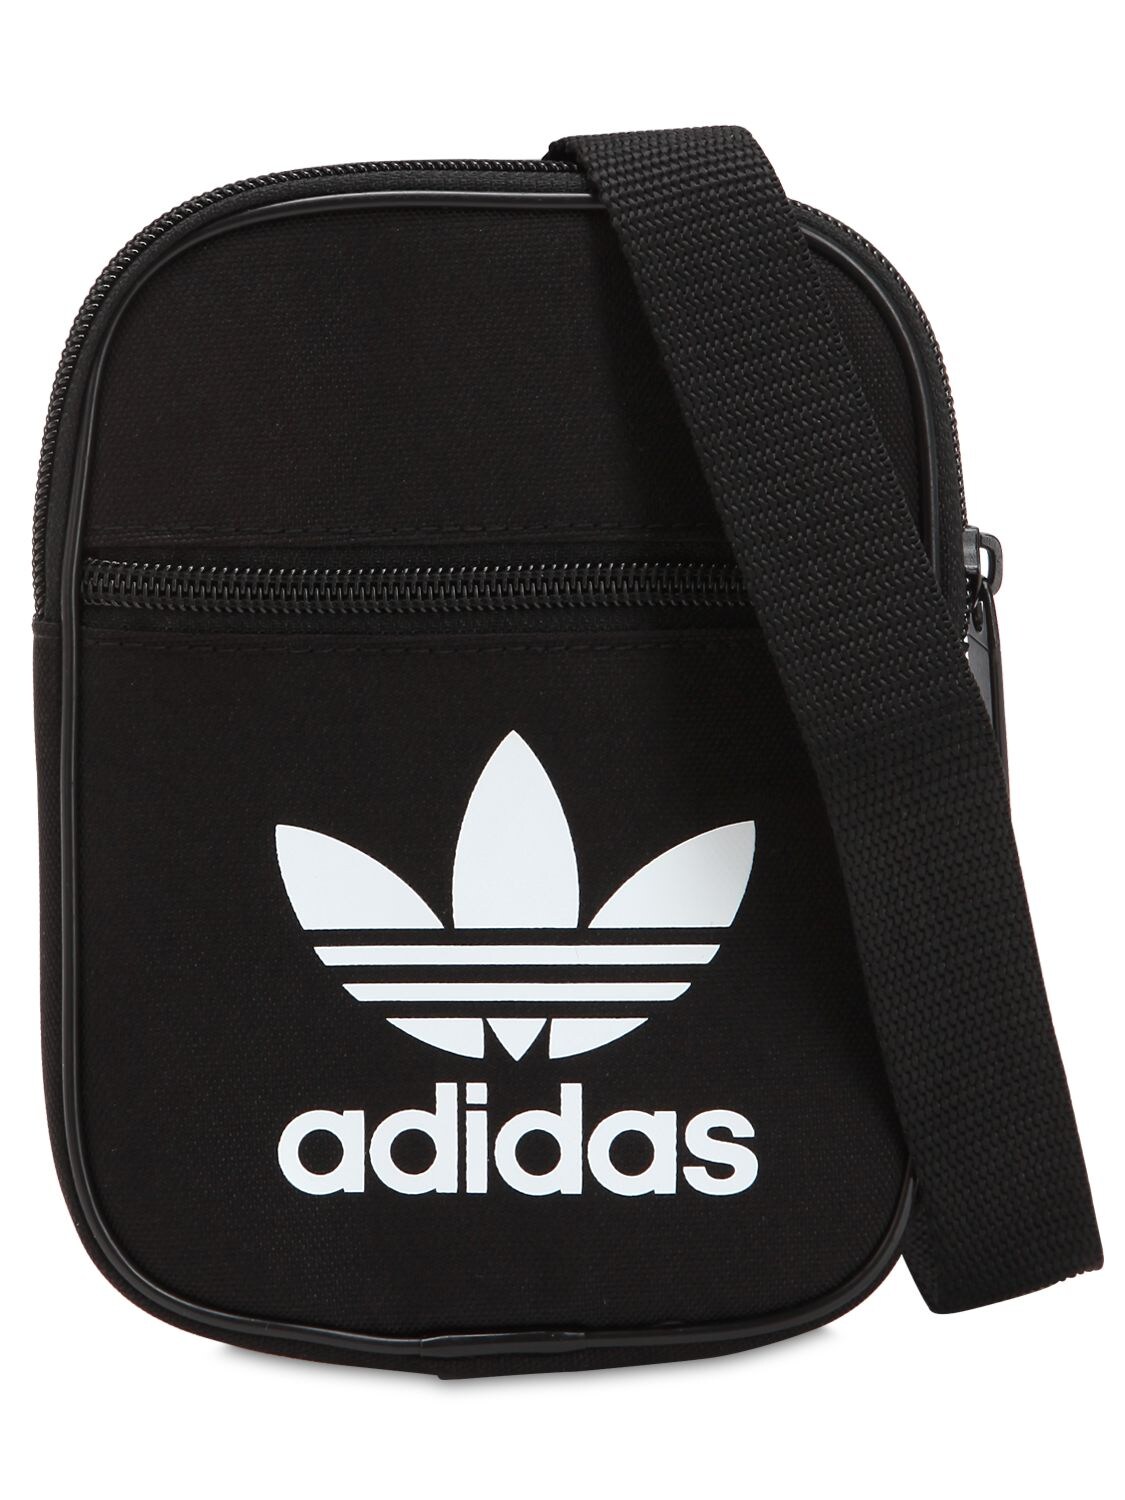 Adidas Originals Trefoil Bag In Black | ModeSens